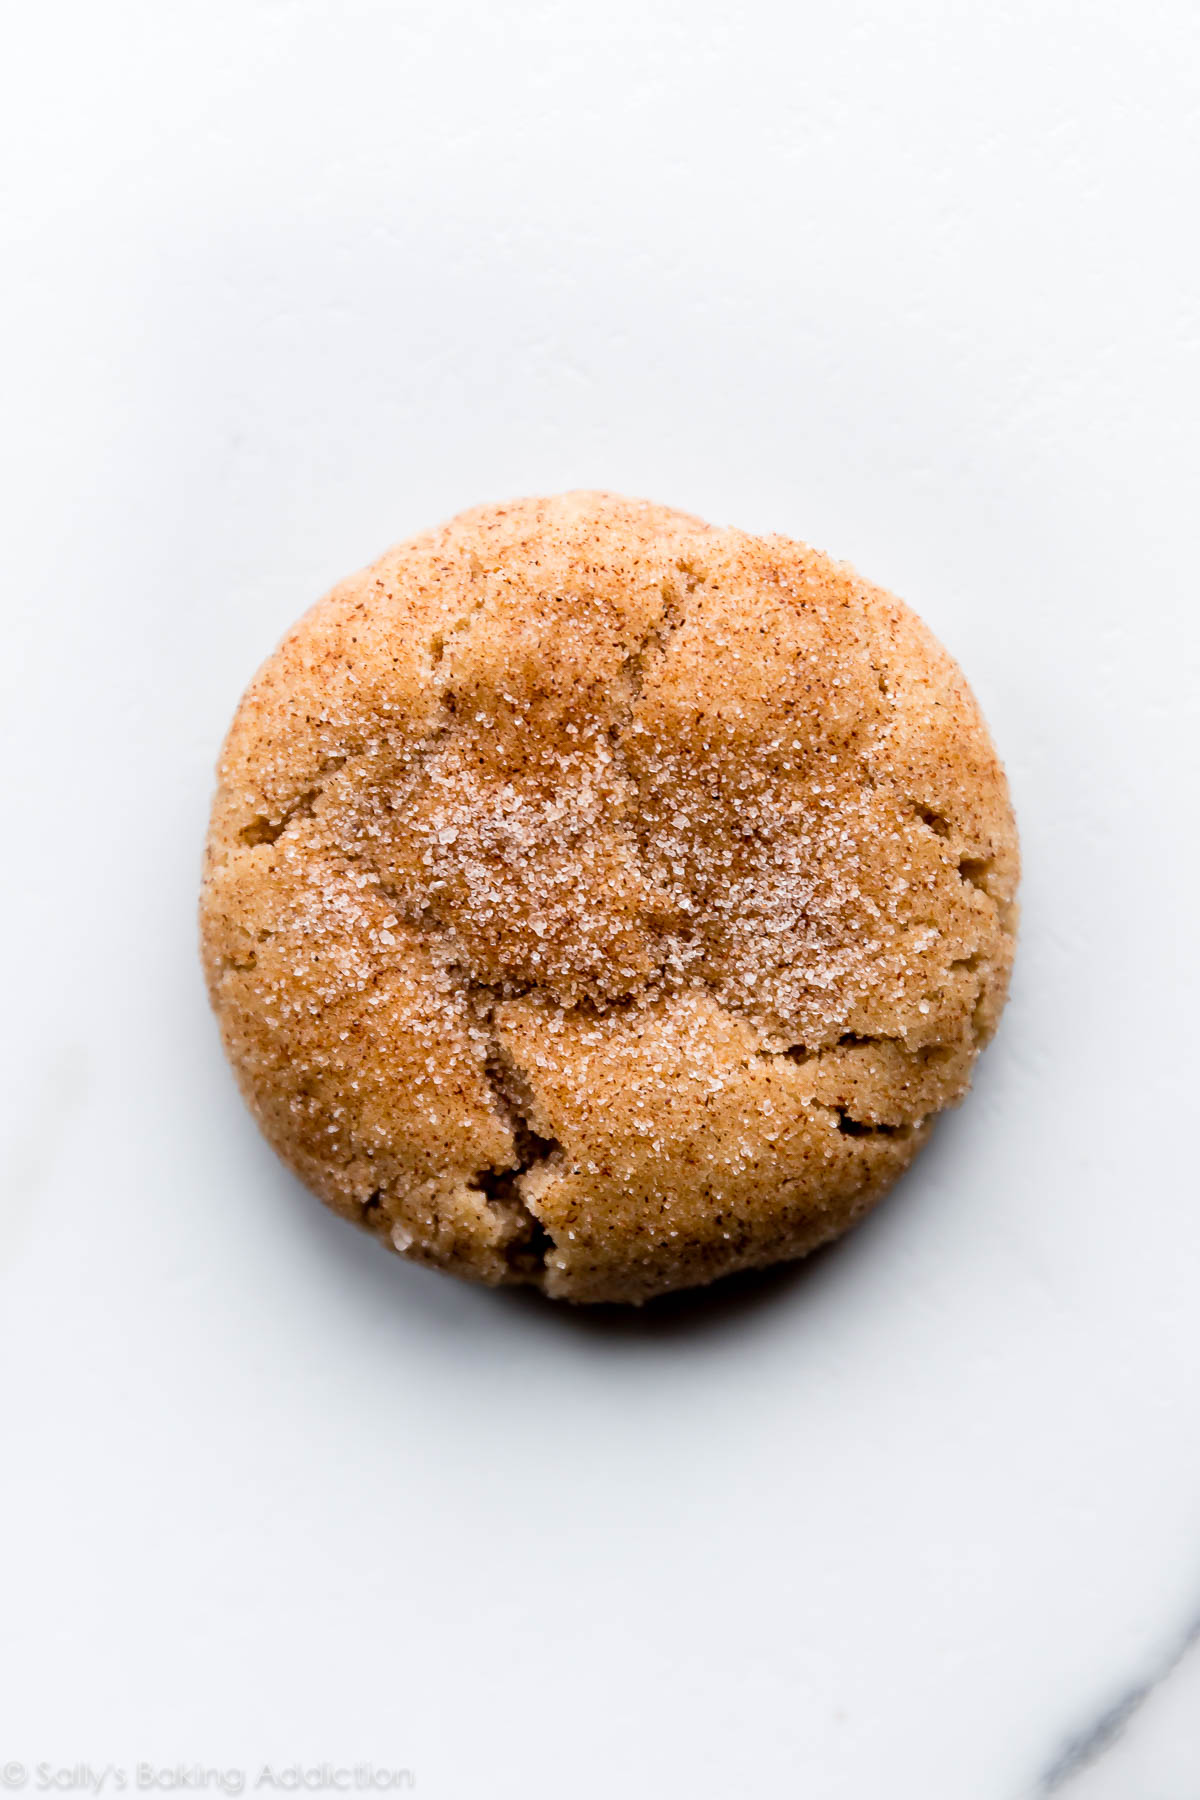 Les snickerdoodles mous les plus épais que vous ferez cuire! Pas de refroidissement de pâte à biscuits pour cette recette de biscuit snickerdoodle facile sur sallysbakingaddiction.com